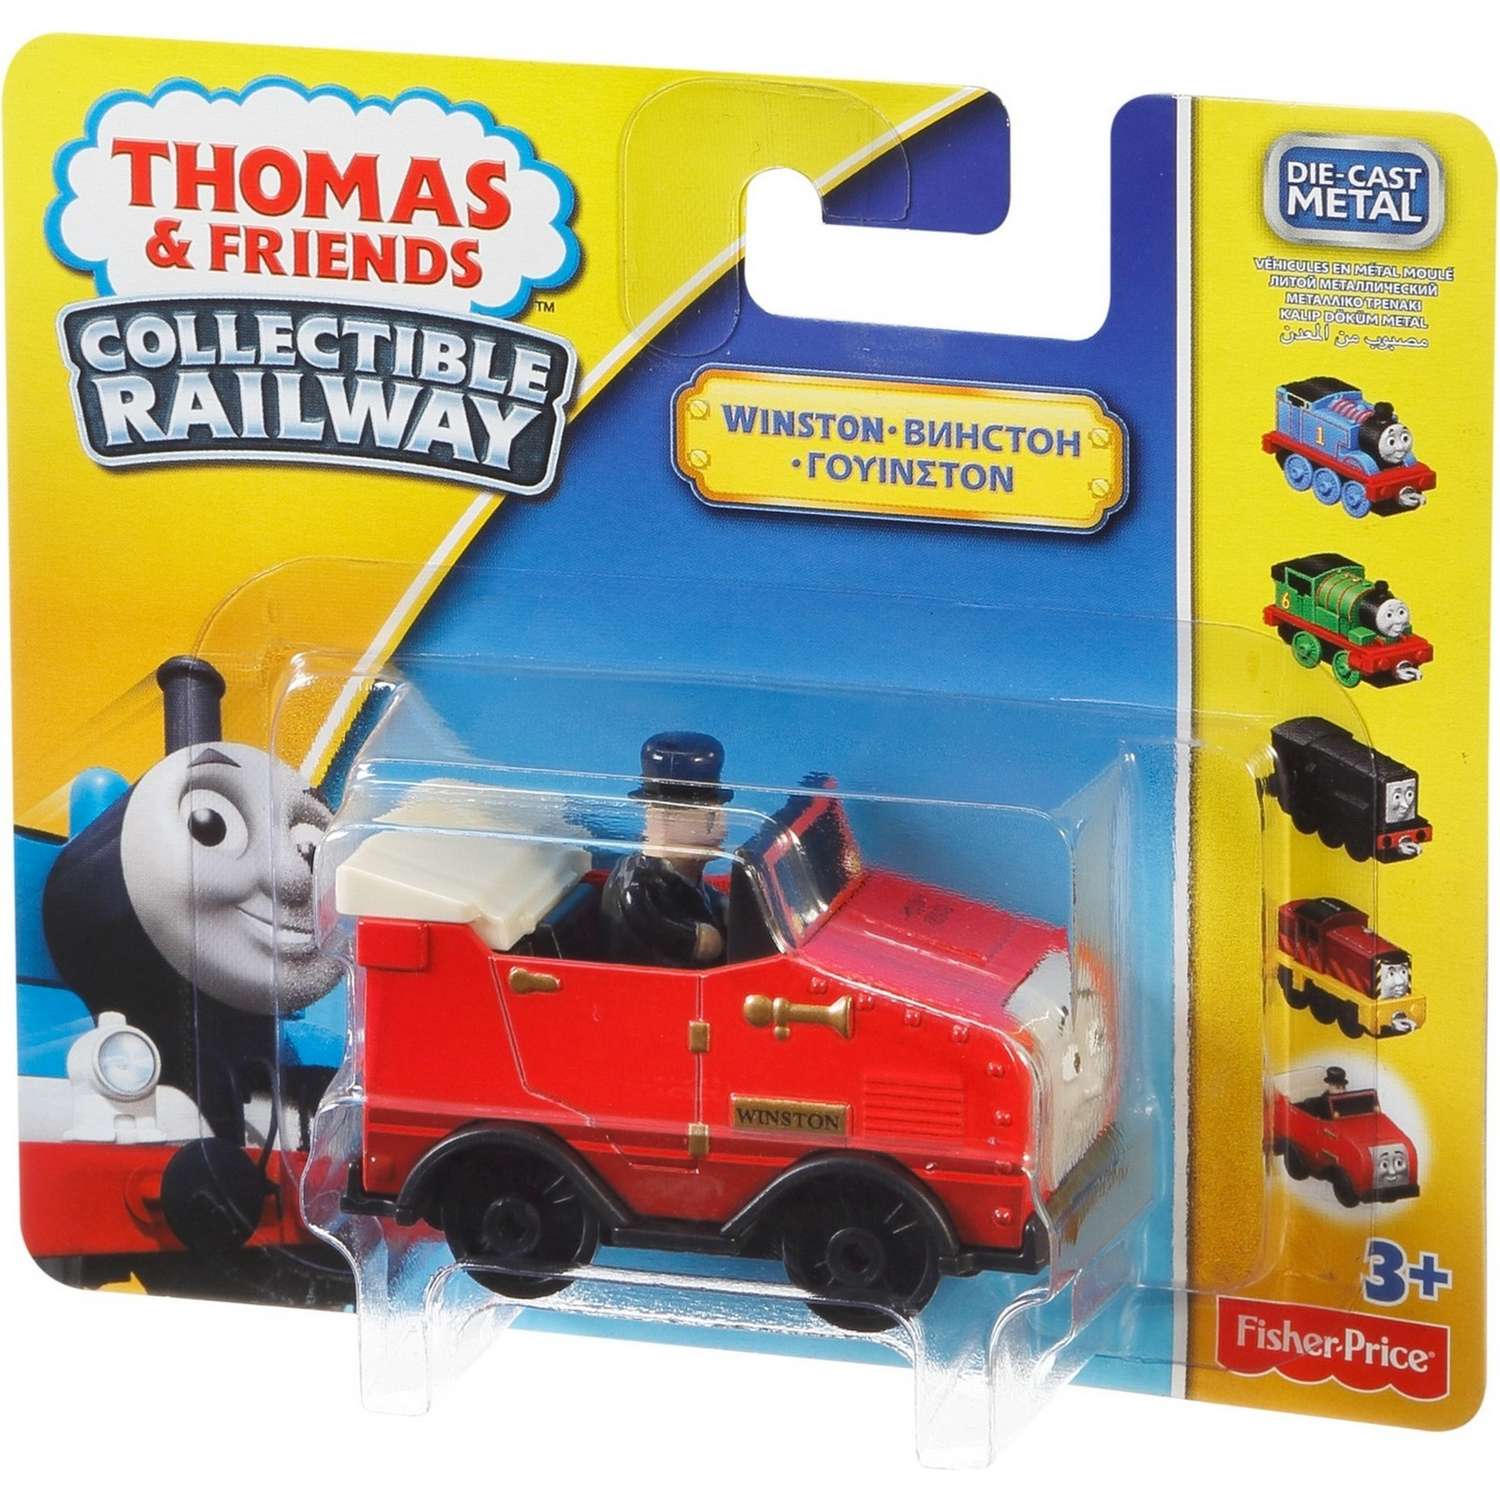 Базовые паровозики Thomas & Friends Томас и друзья в ассортименте BHR64 - фото 30